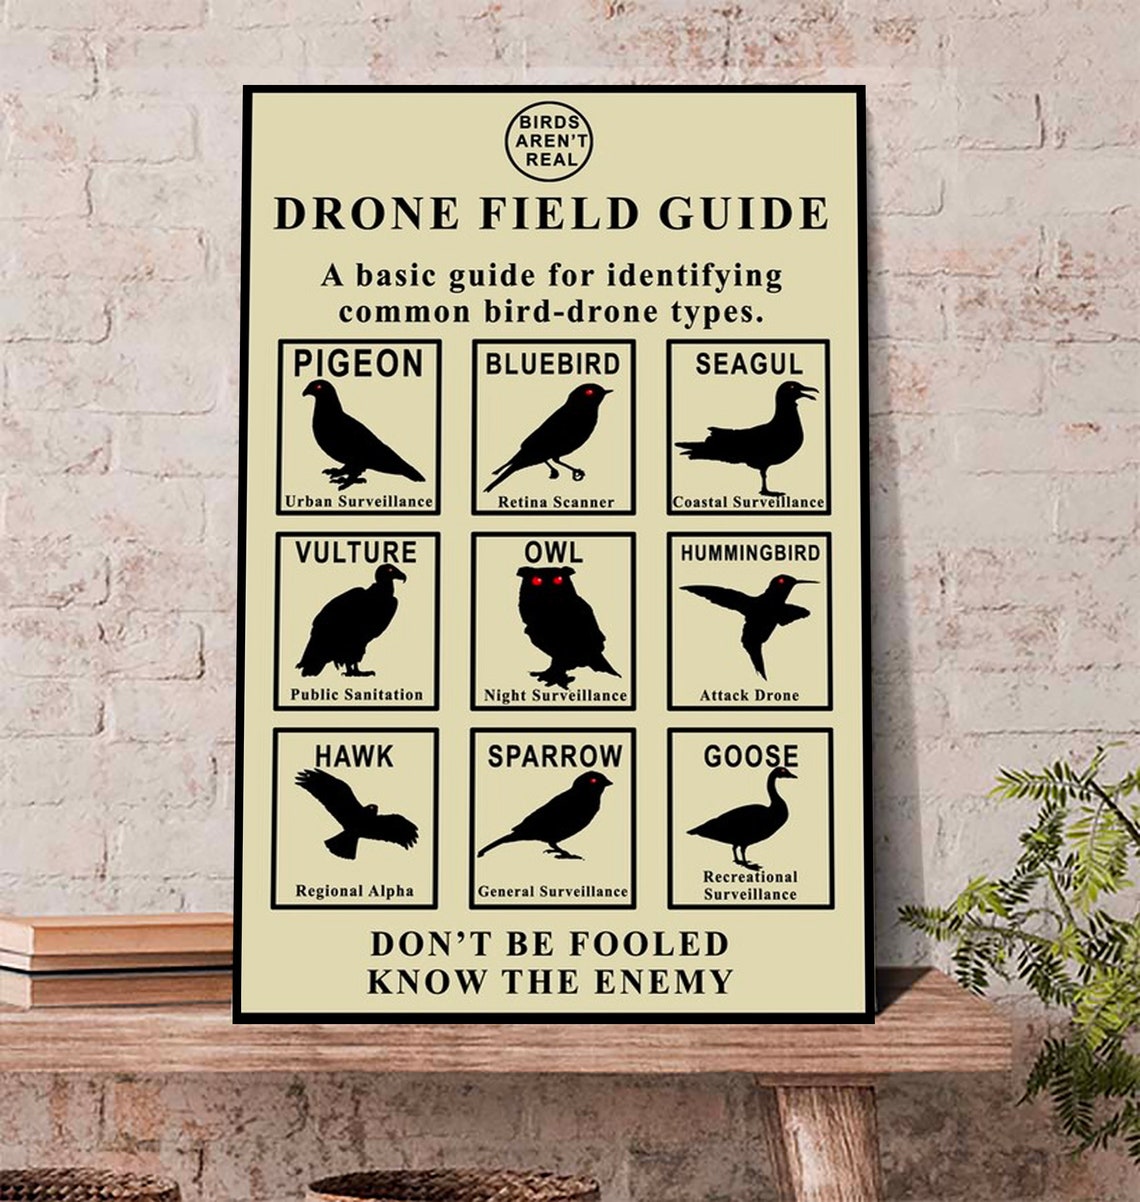 gli uccelli-non-sono-reali-poster-gli-uccelli-non-sono-reali-drone-field-guide-poster-.jpg